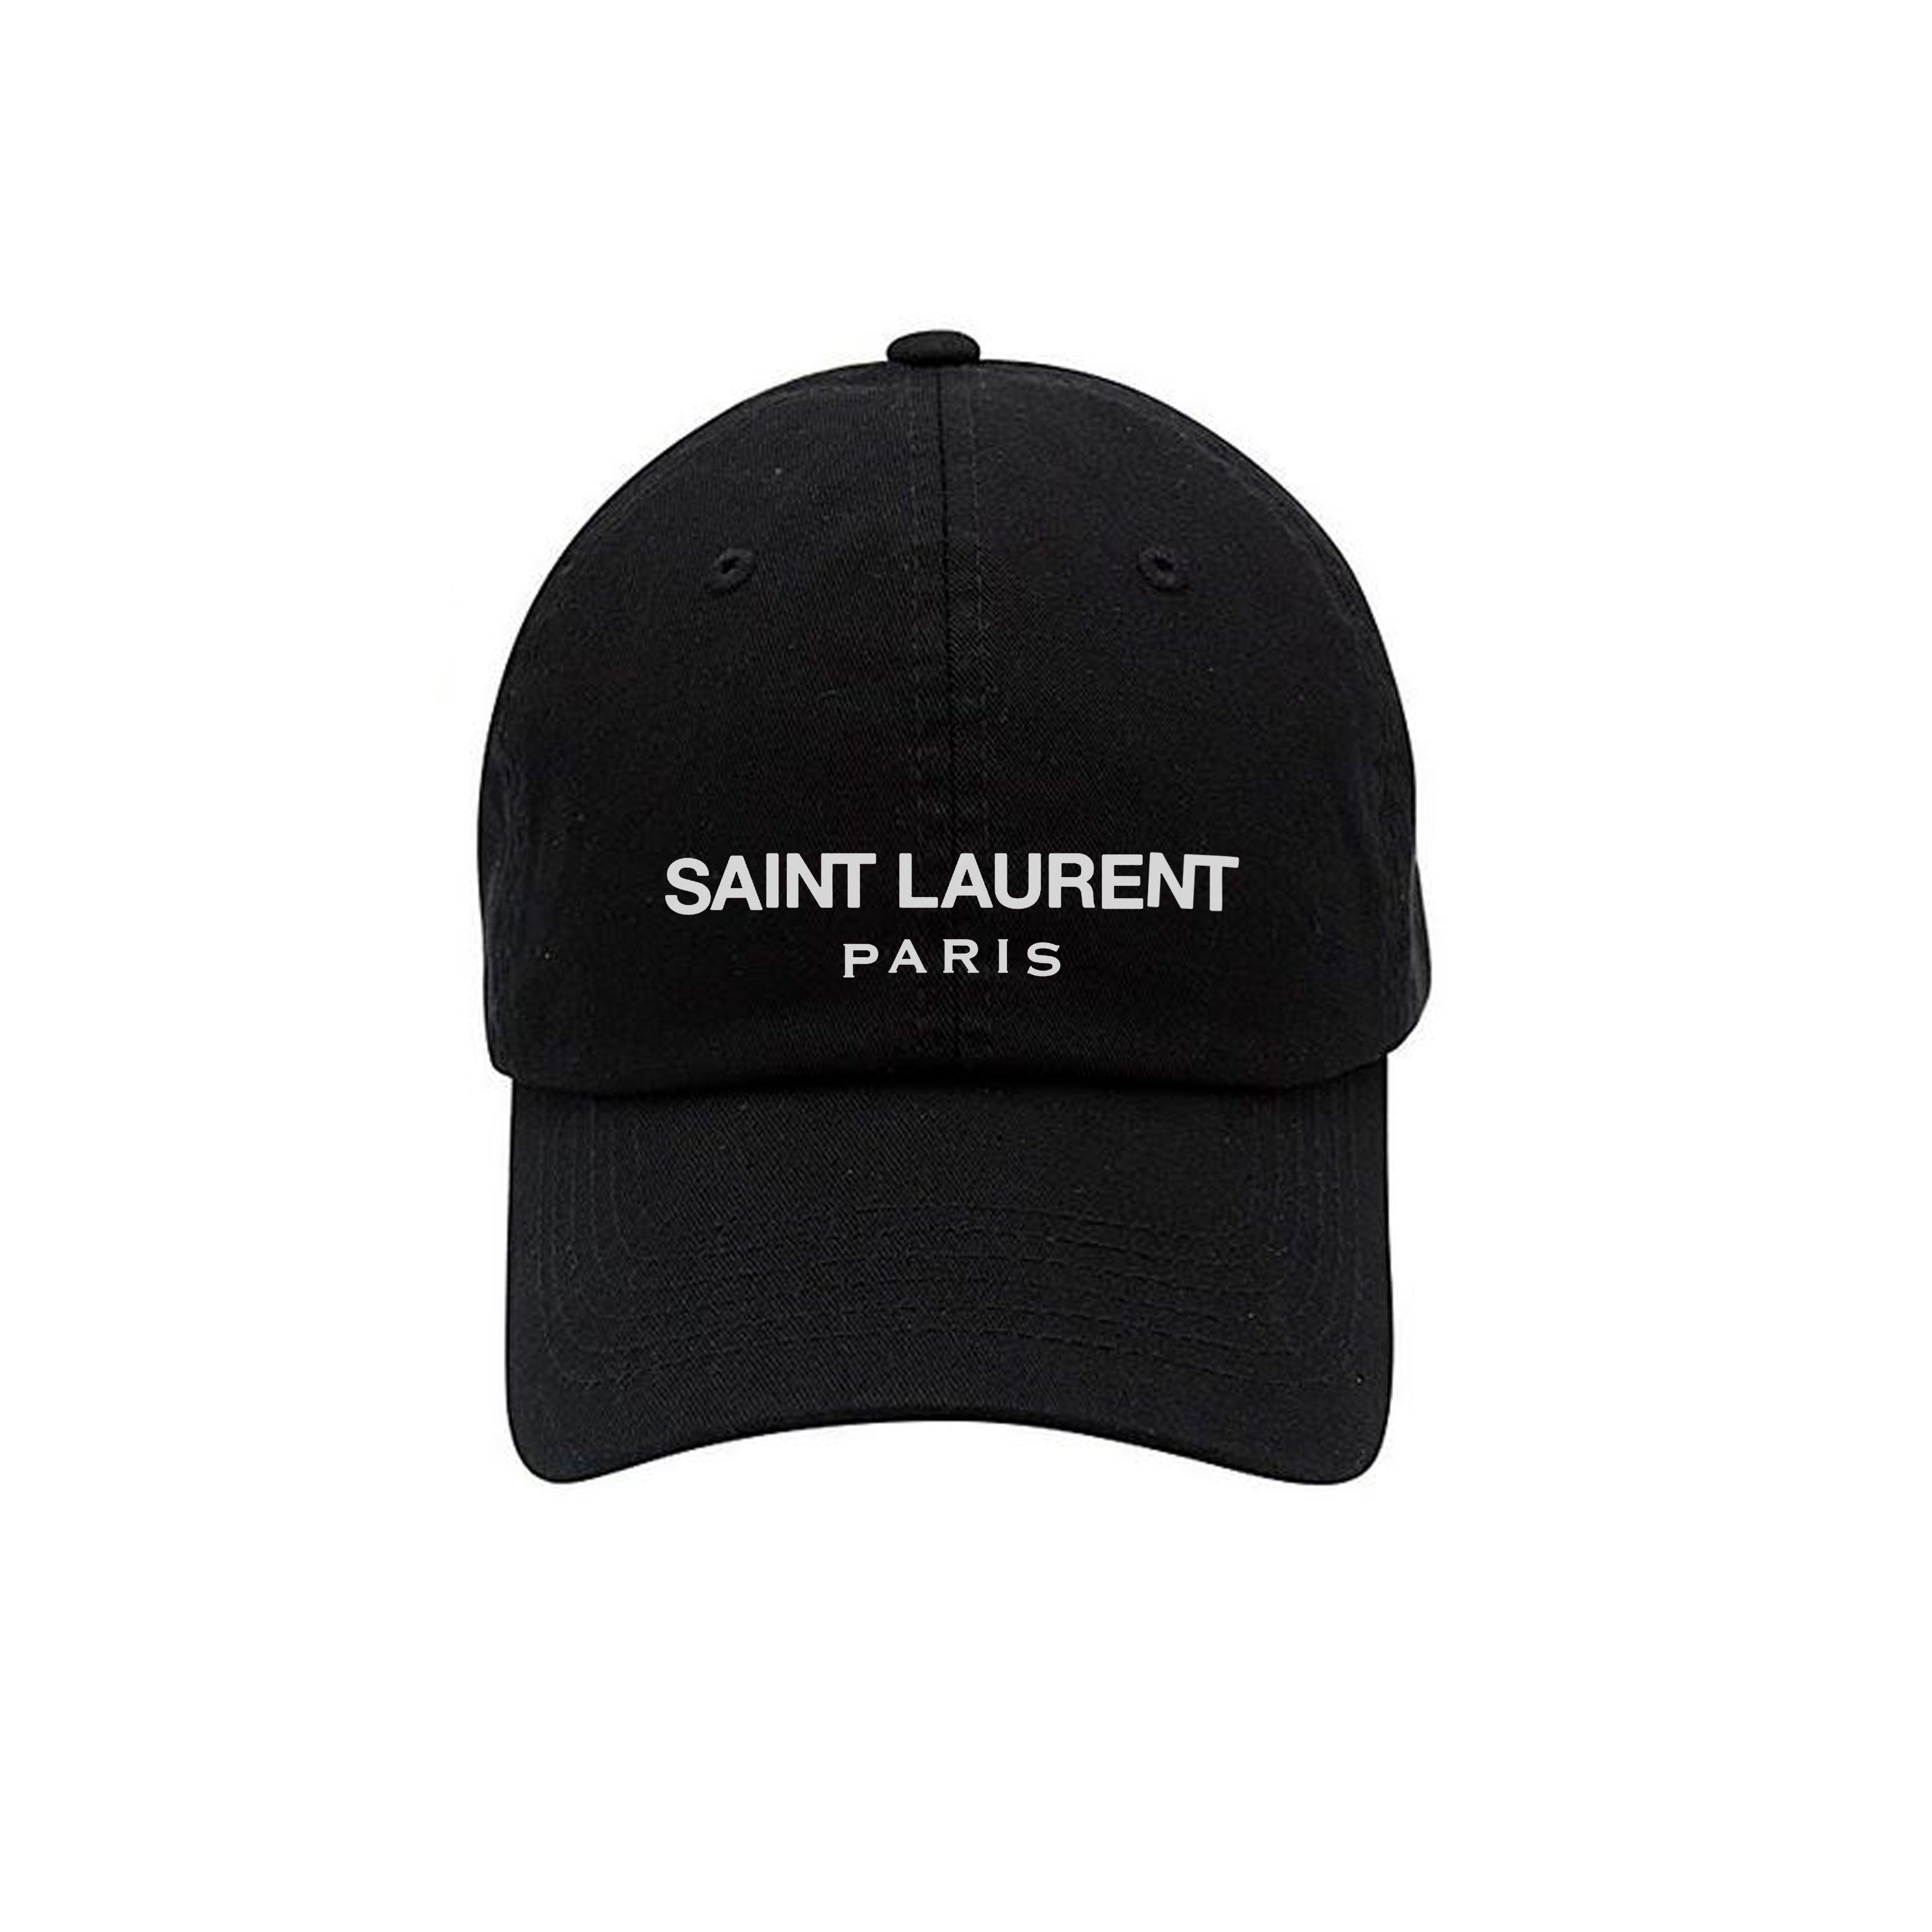 Hats, SAINT LAURENT